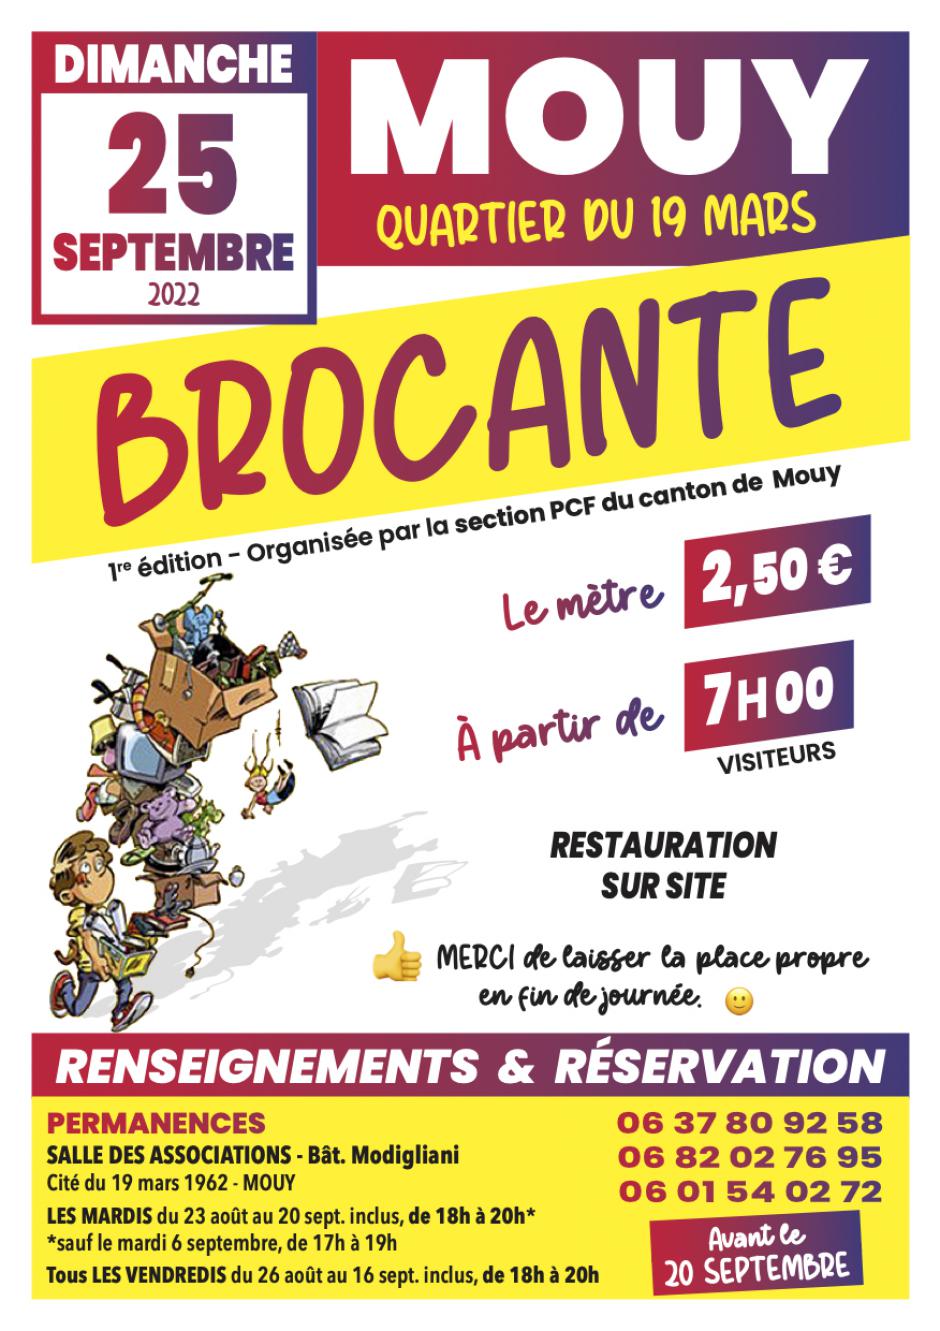 25 septembre, Mouy - Brocante organisée par la section PCF du canton de Mouy